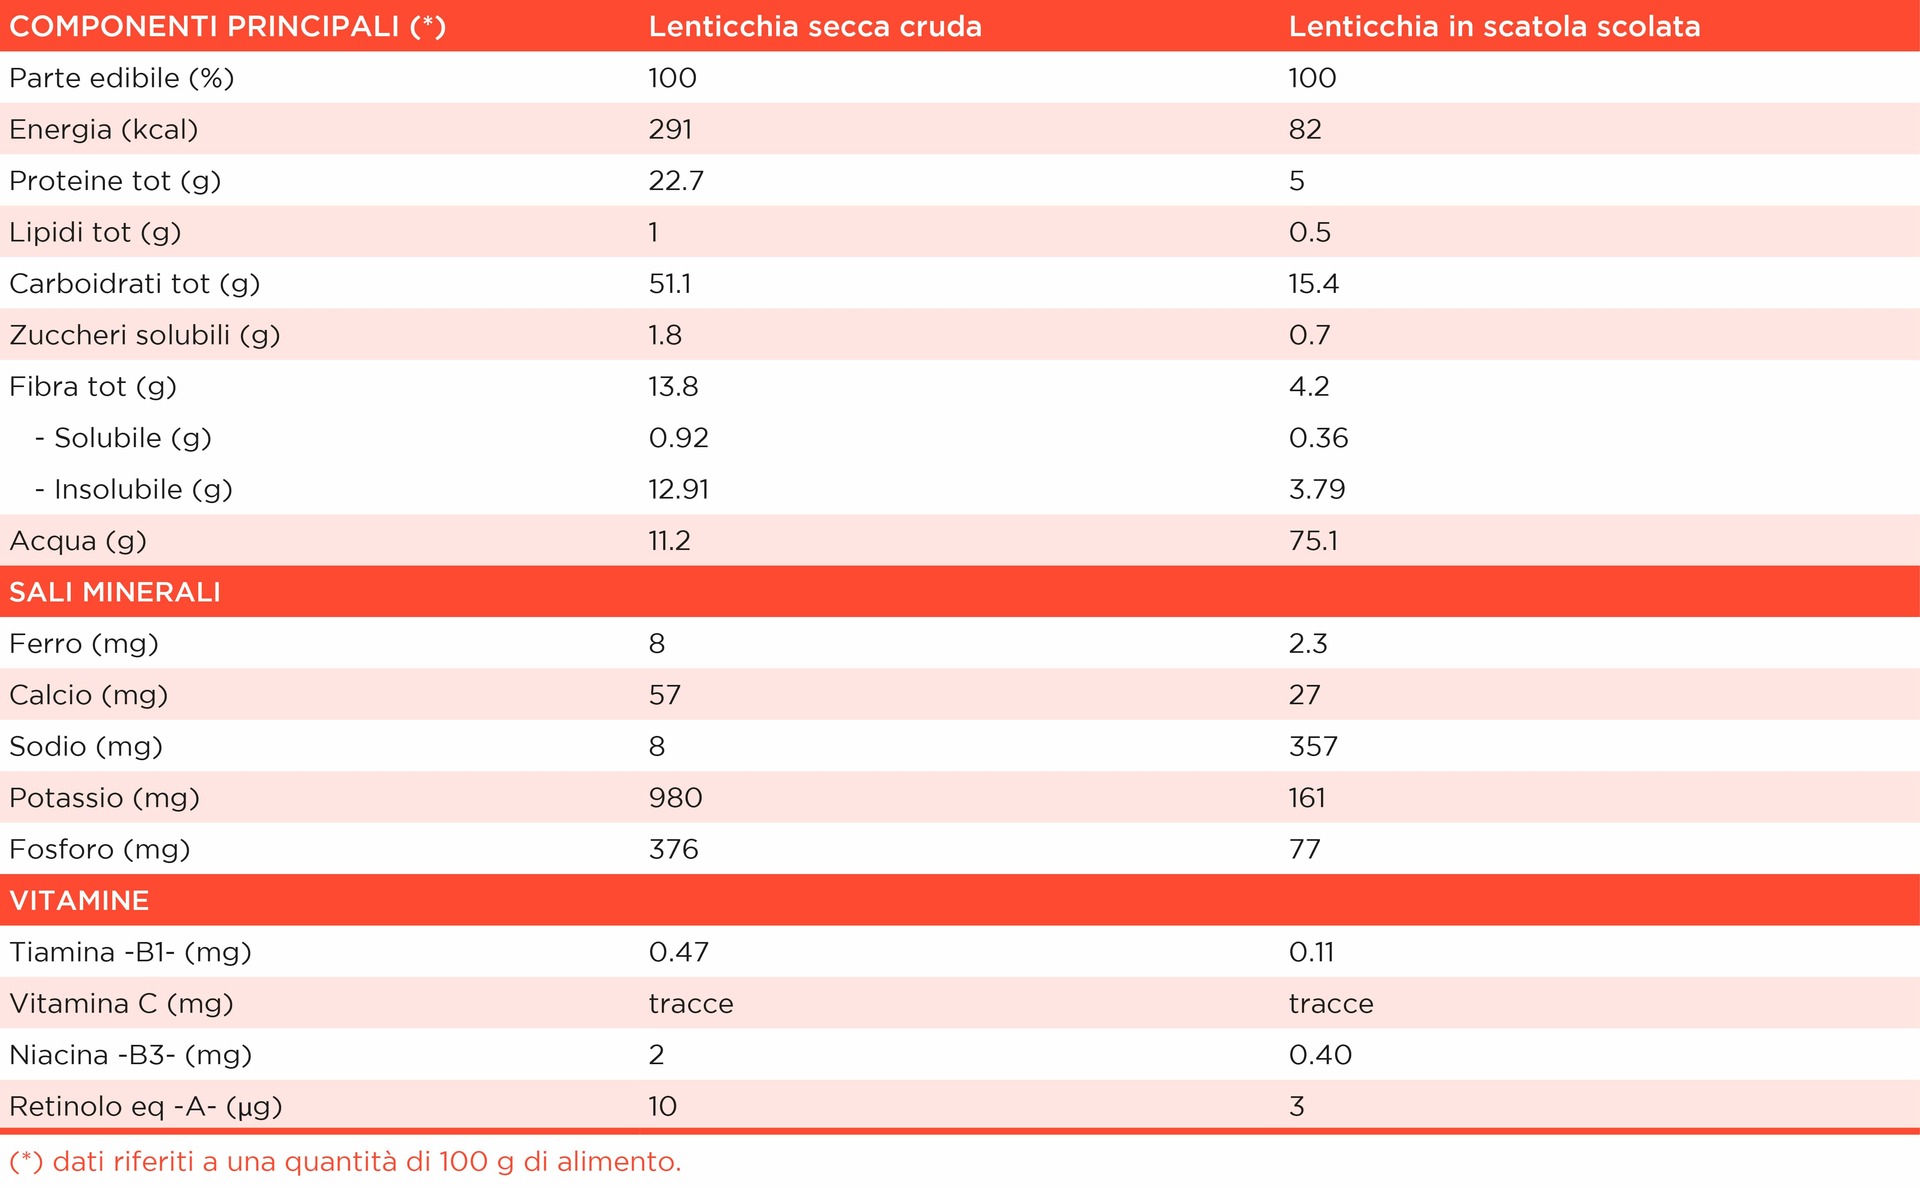 tabella con i valori nutrizionali di lenticchie secche crude e lenticchie in scatola scolate